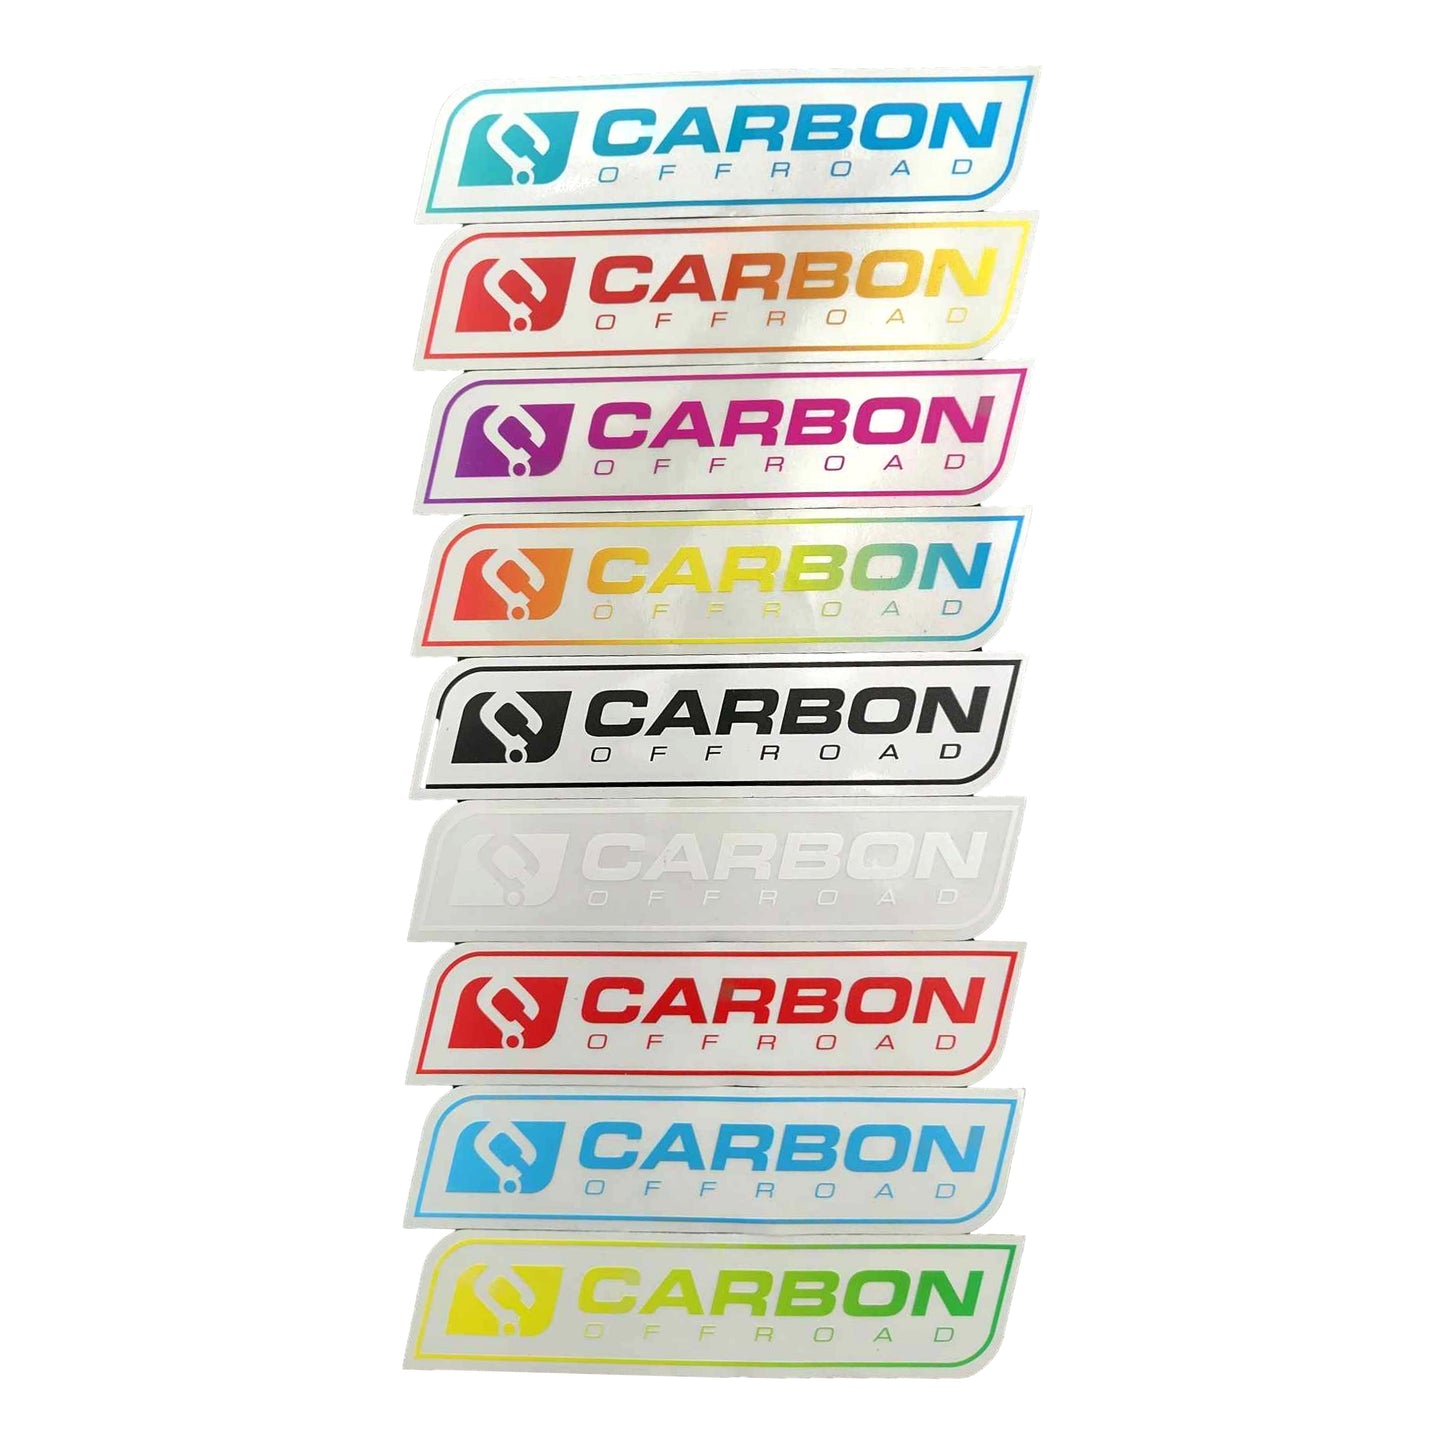 Carbon Offroad bumper sticker 182 x 43mm choose your colour